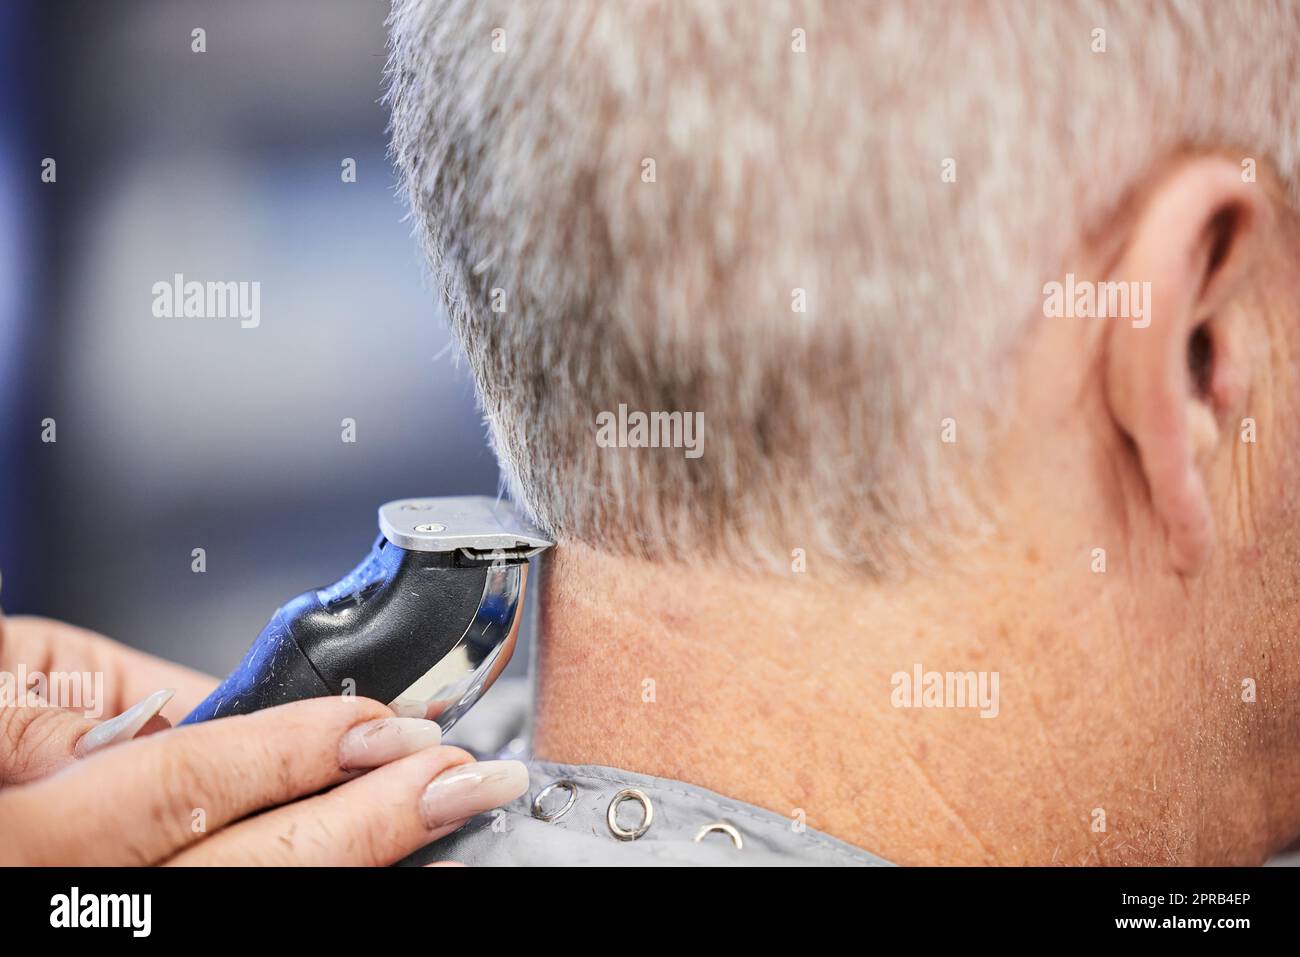 Es gibt ein Handwerk, um Haare zu schneiden. Ein Mann bekommt einen Haarschnitt in einem Salon. Stockfoto